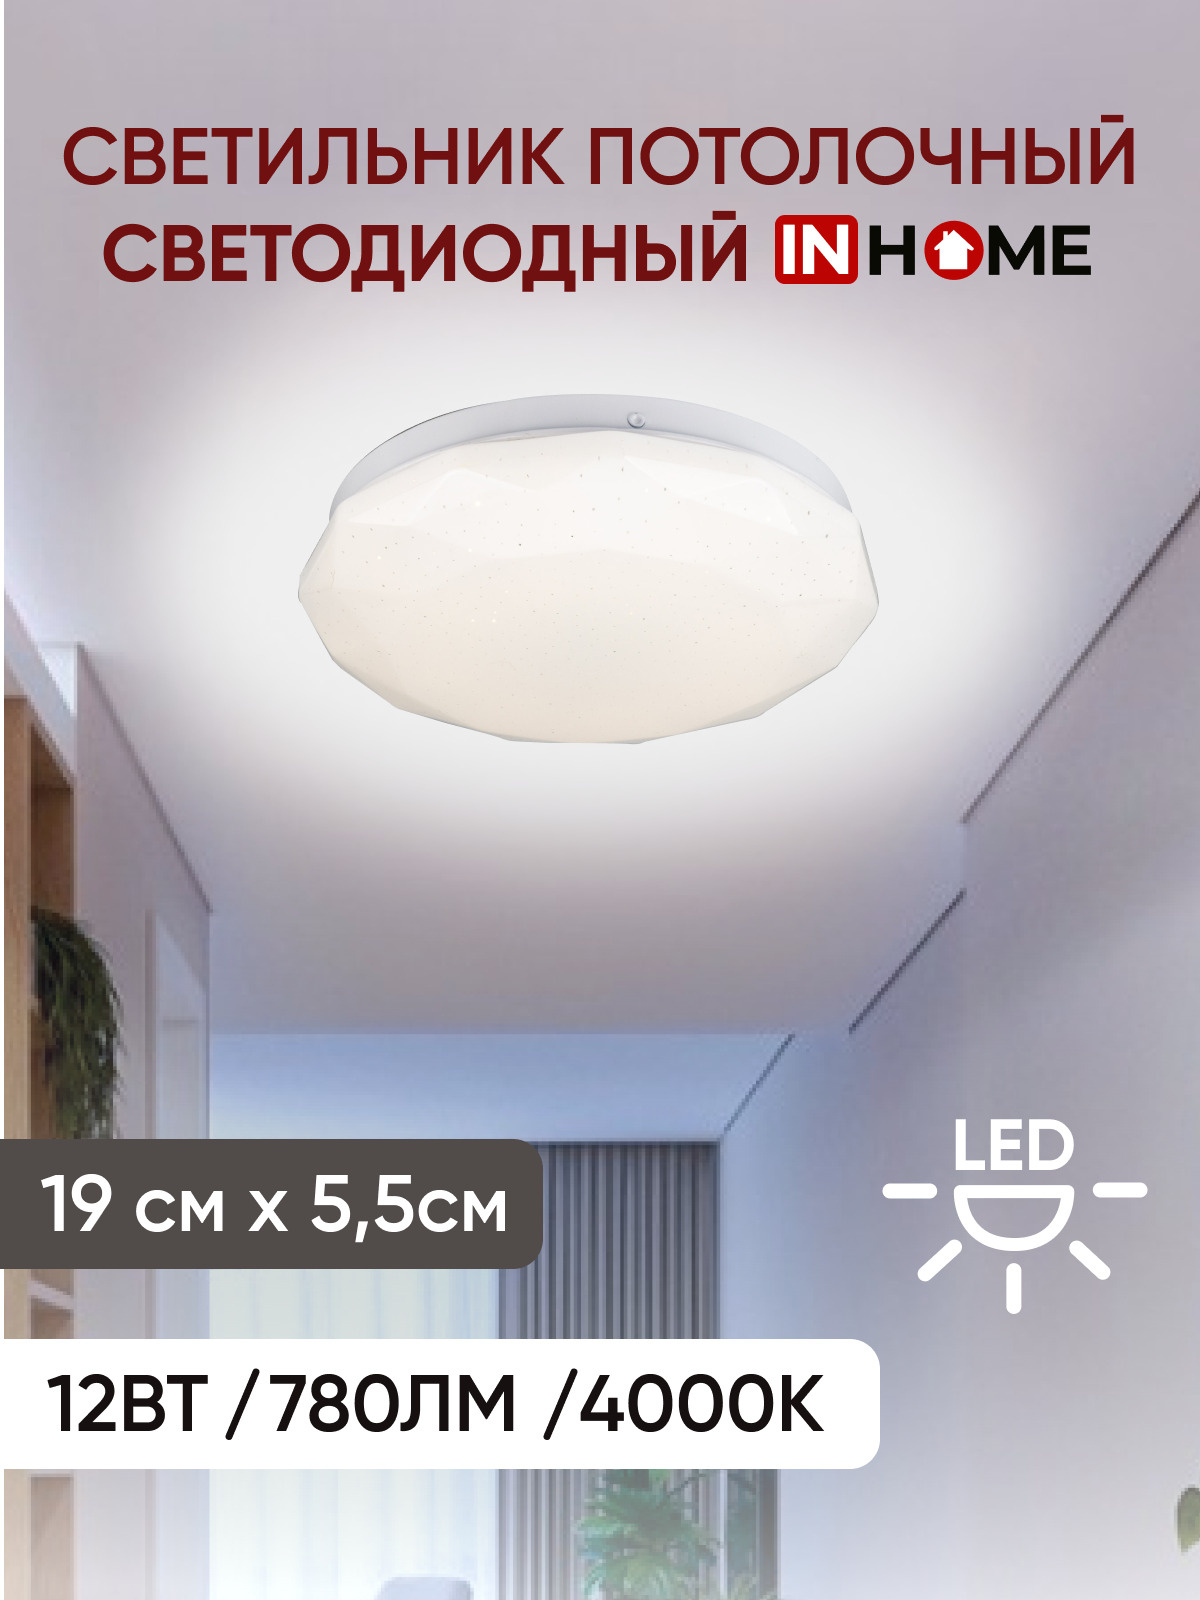 Светильник потолочный светодиодный серии DECO ДАЙМОНД IN HOME. 